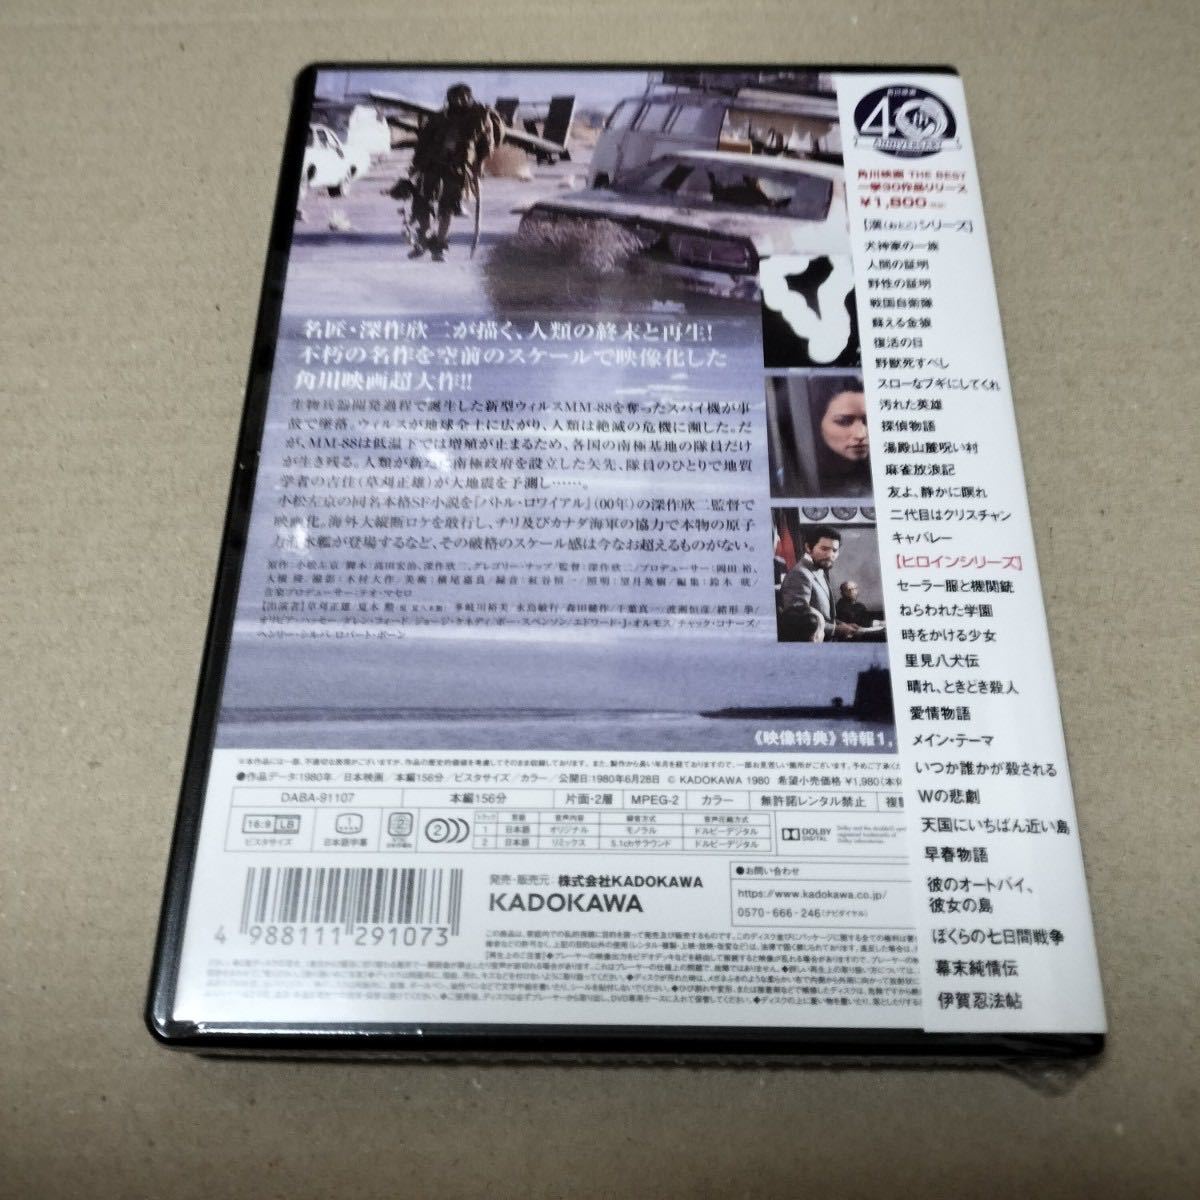 セールSALE％OFF 激動の1750日 '90東映 DVD セル版